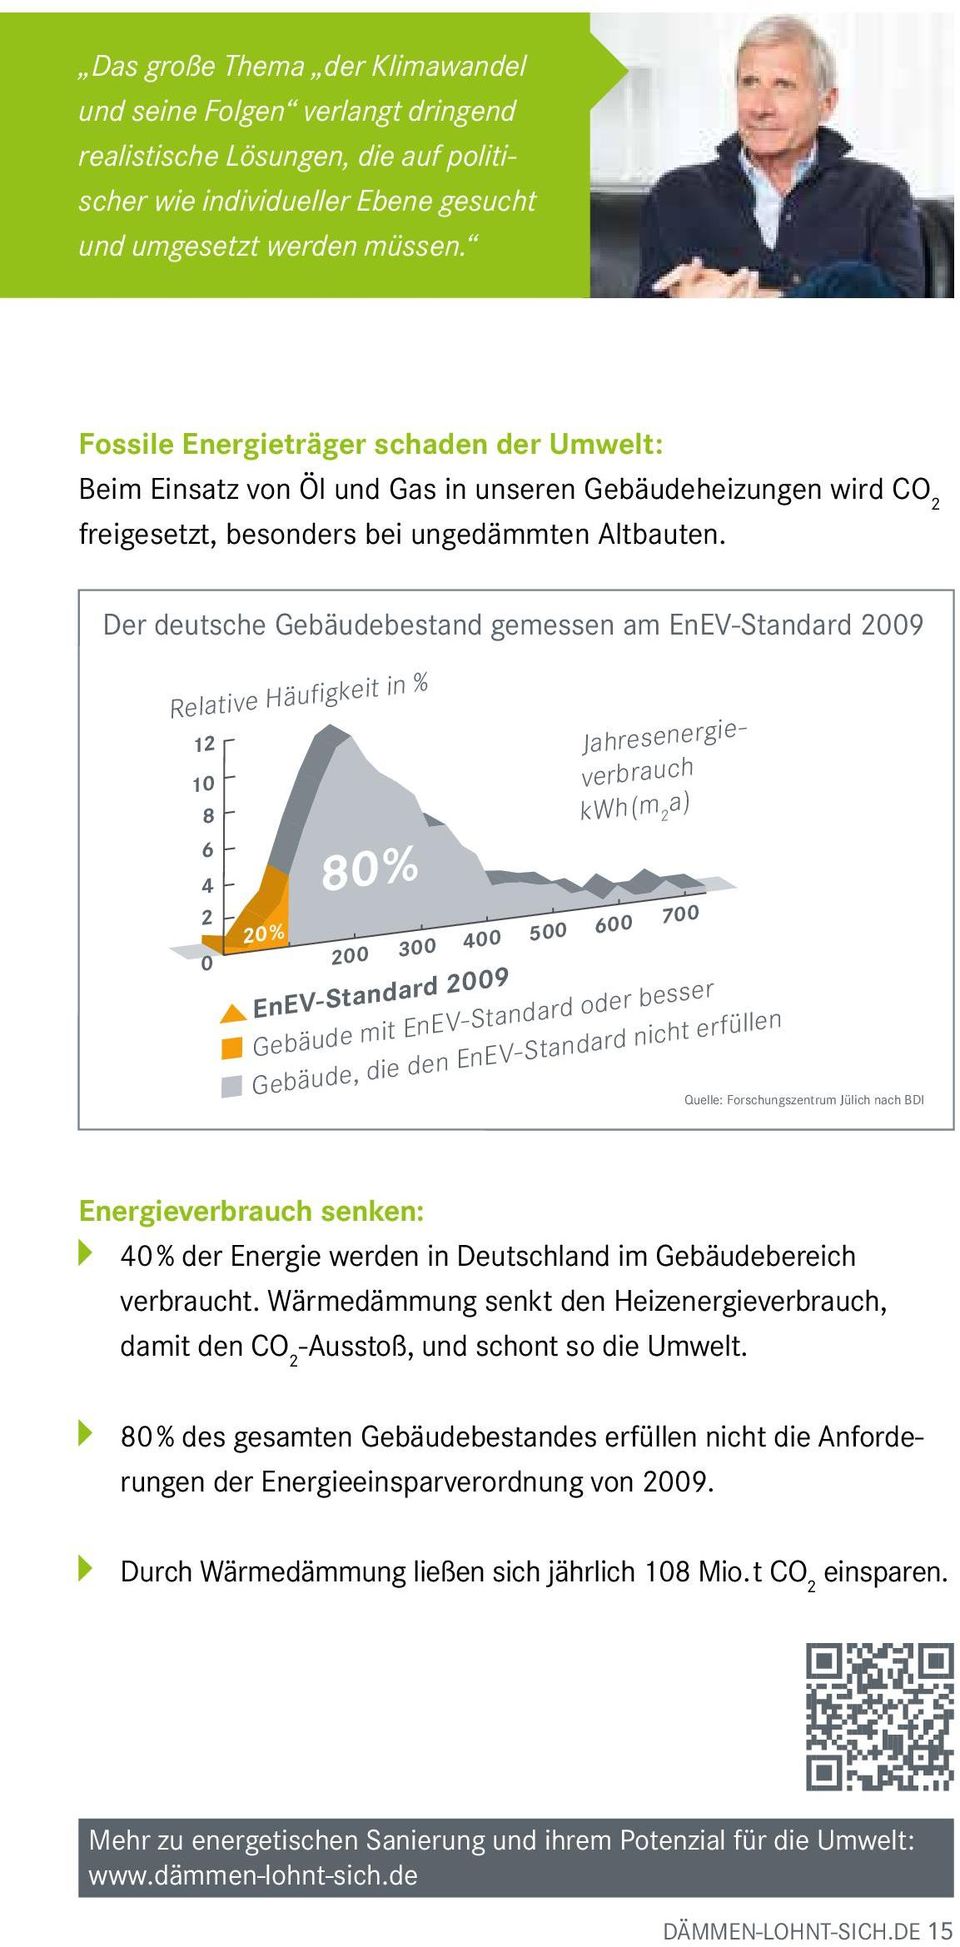 Der deutsche Gebäudebestand gemessen am EnEV-Standard 2009 Relative Häufigkeit in % 12 10 8 6 4 2 0 100 20% 80% Jahresenergieverbrauch kwh(m 2 a) 200 300 400 500 600 700 EnEV-Standard 2009 Gebäude